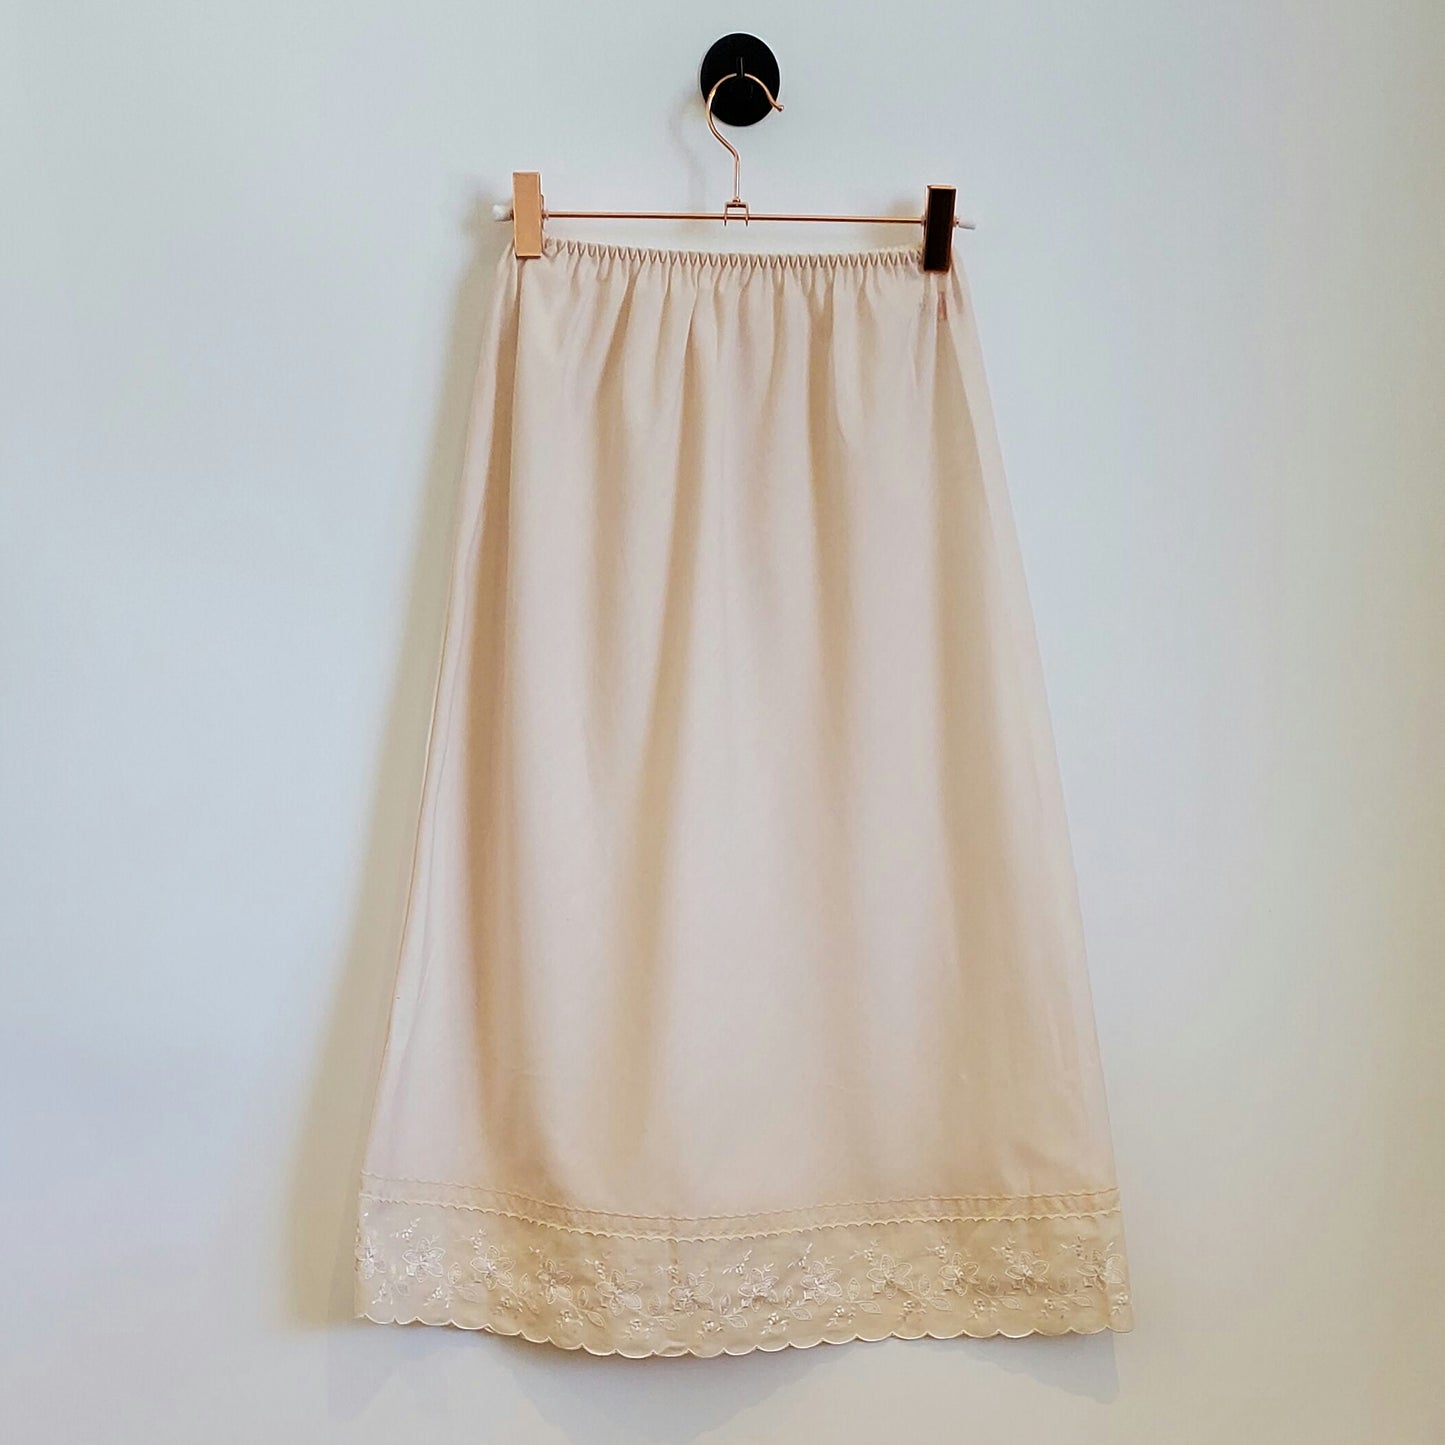 Vintage 70s Lace Trim Slip Skirt | Size 10-12